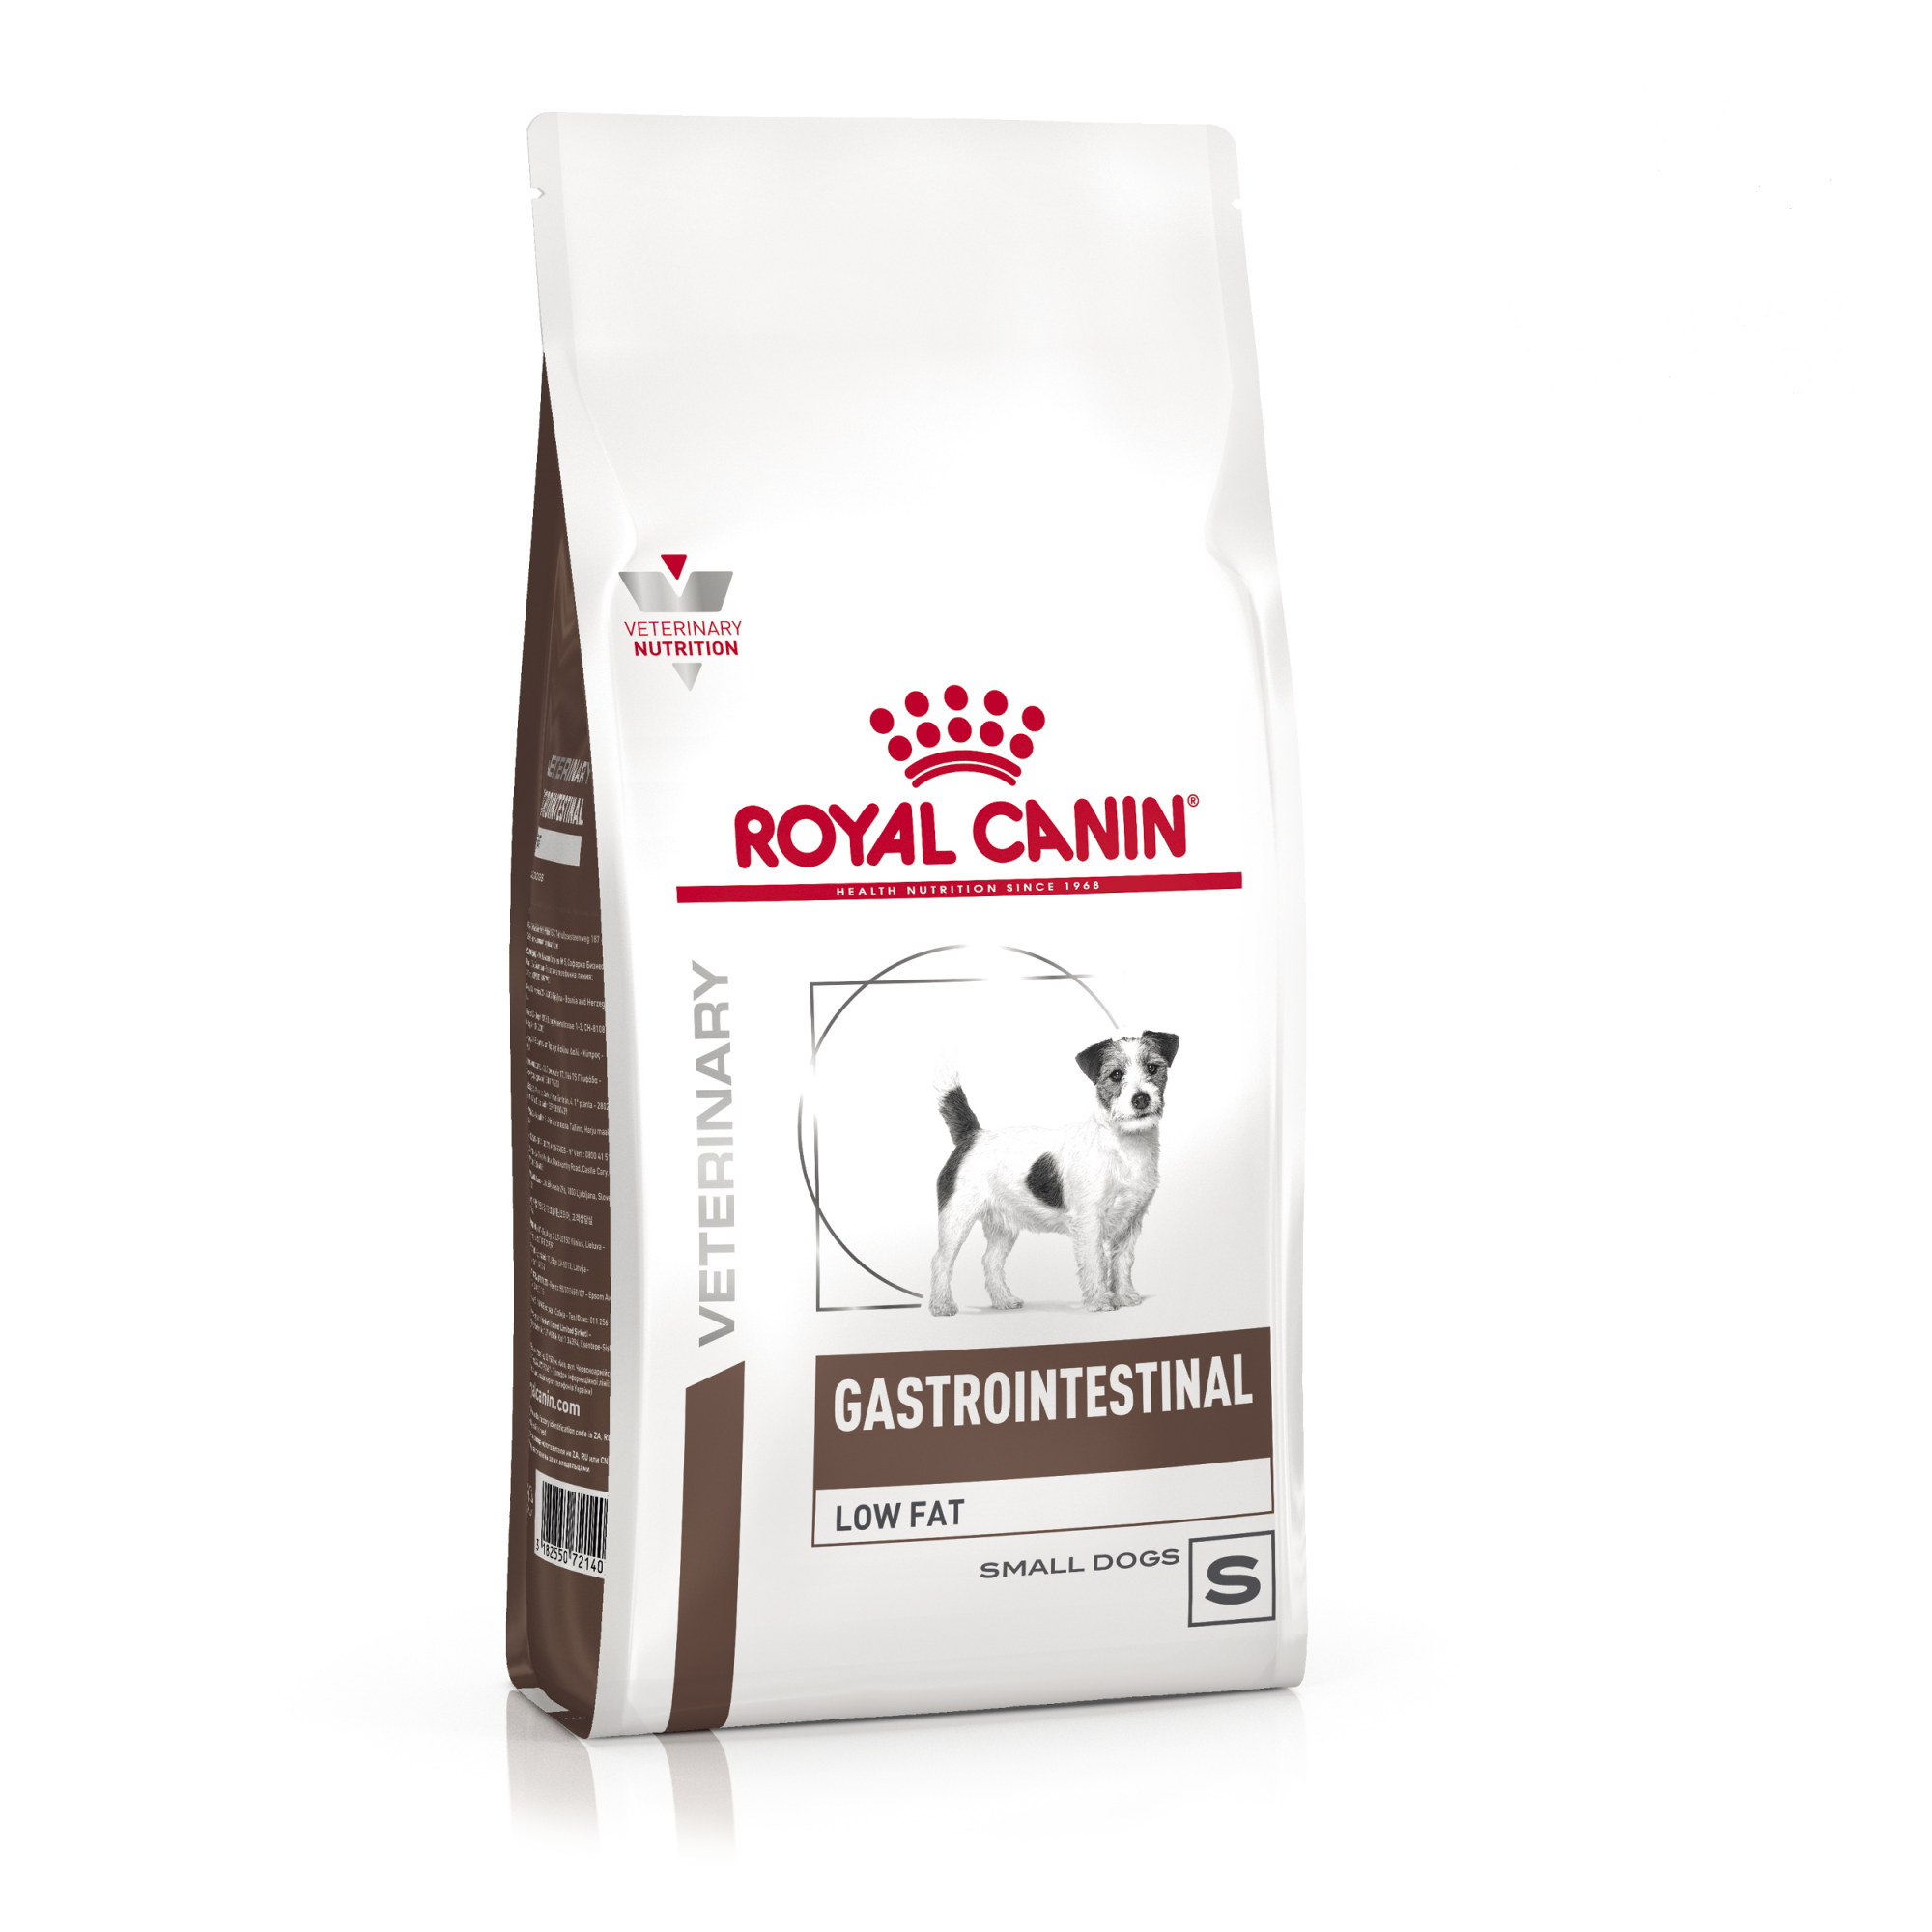 Сухой корм для собак Royal Canin Gastro, при нарушениях пищеварения, для малых пород 1 кг - купить в Мегамаркет Екб, цена на Мегамаркет